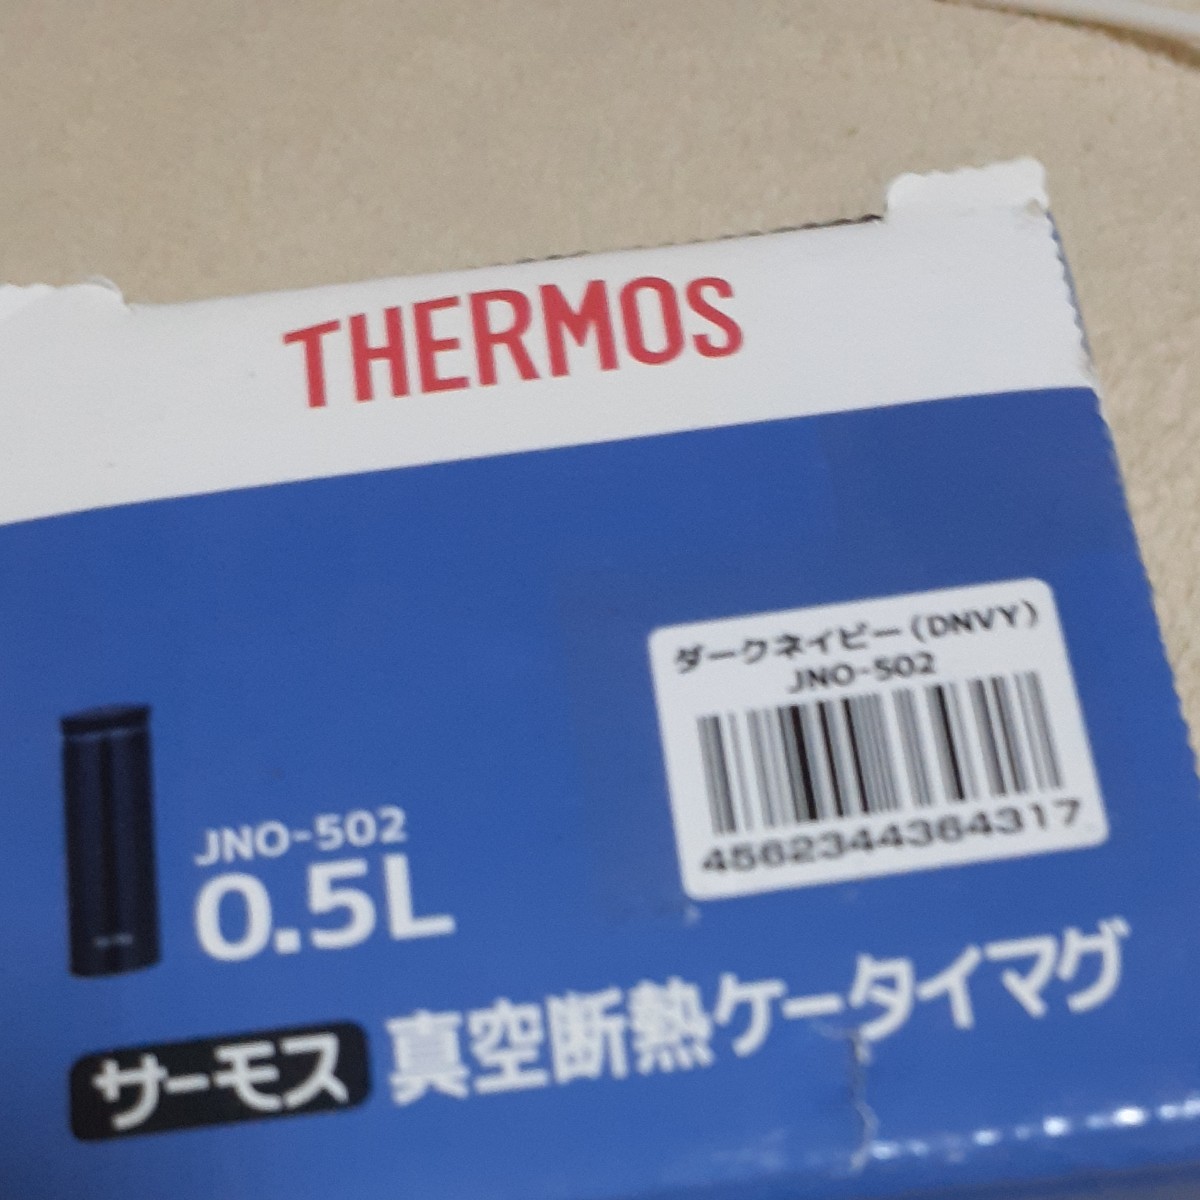 サーモス真空断熱ケータイマグ 0.5L 4pセットランチボックス JNO-502 ダークネイビー グレイトフルデットベア